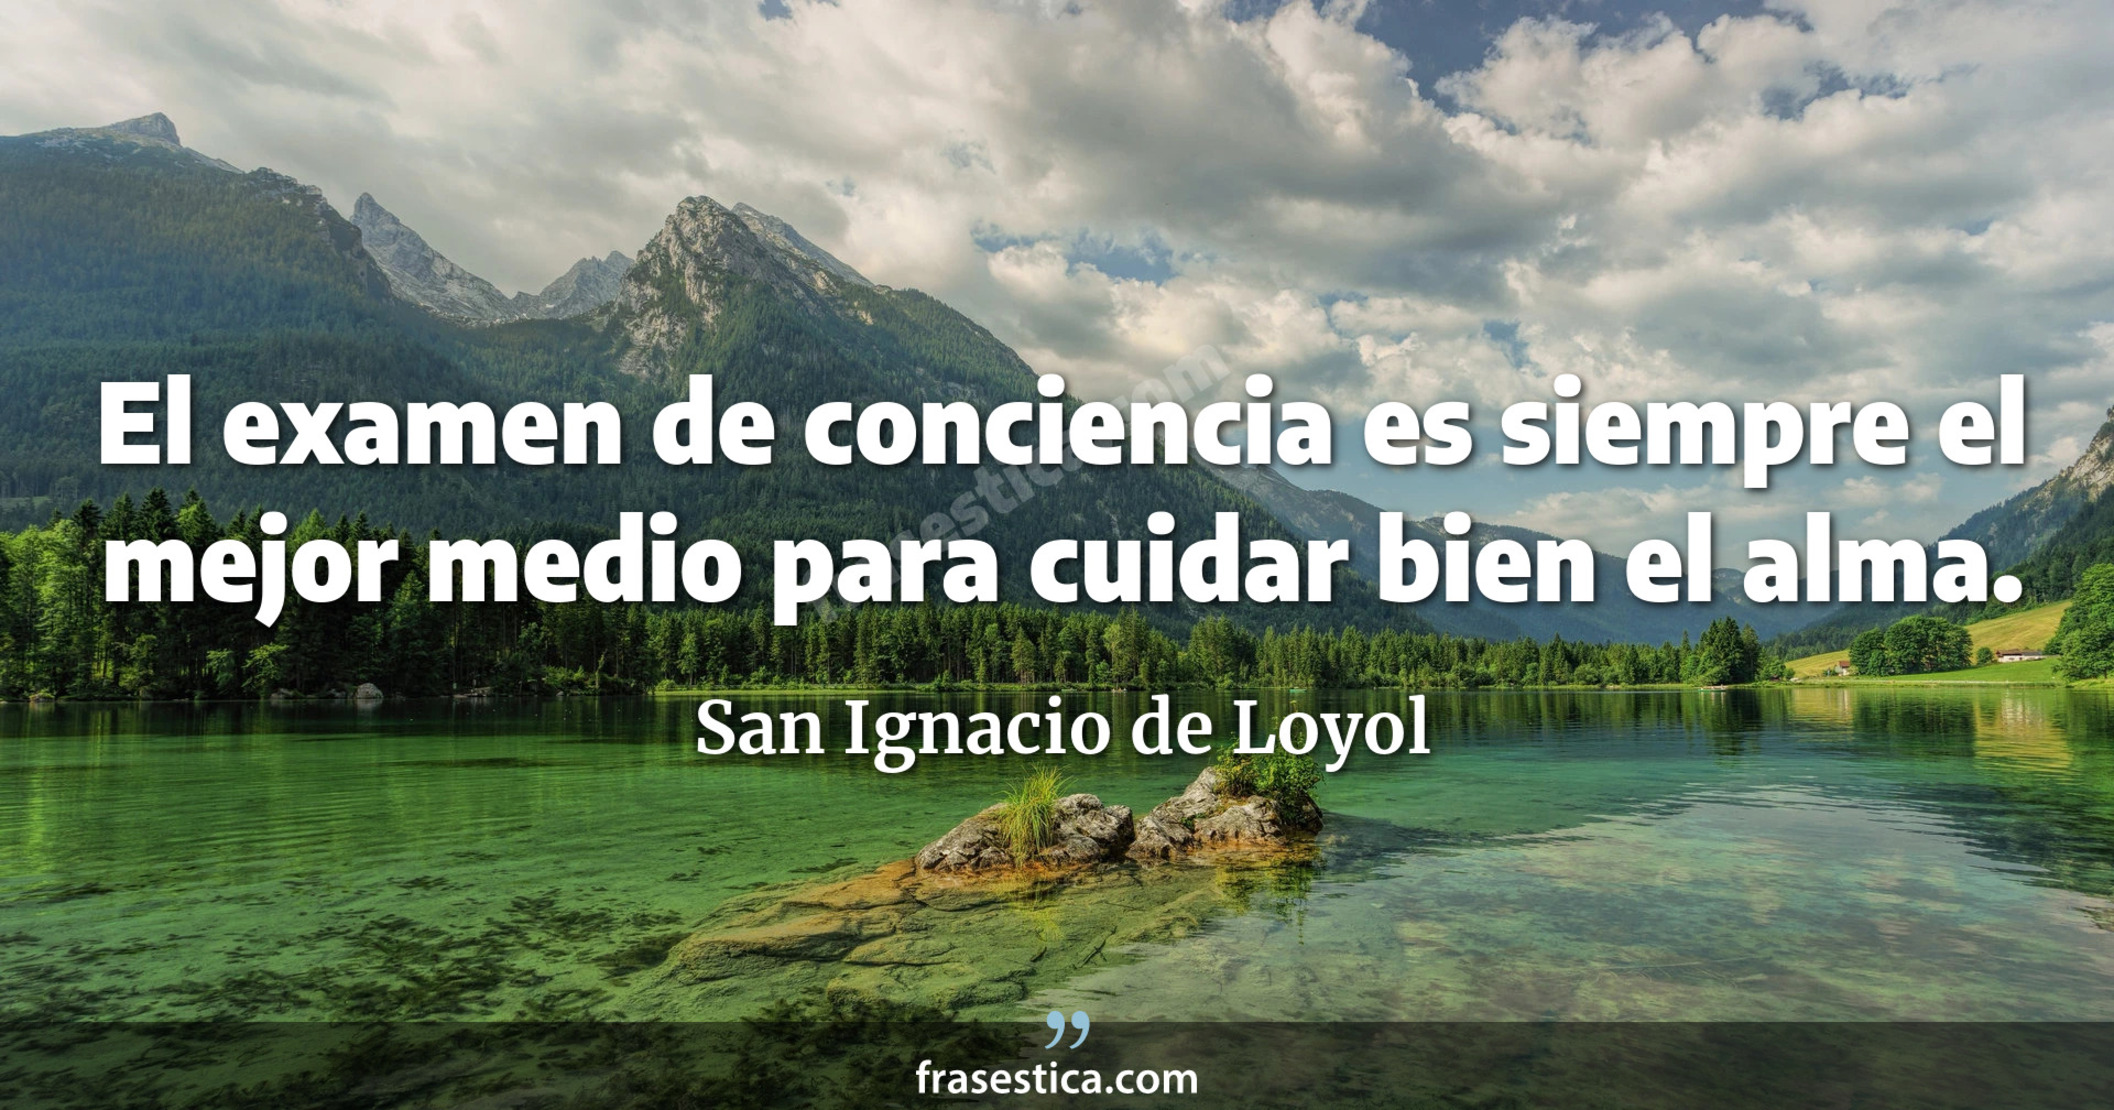 El examen de conciencia es siempre el mejor medio para cuidar bien el alma. - San Ignacio de Loyol